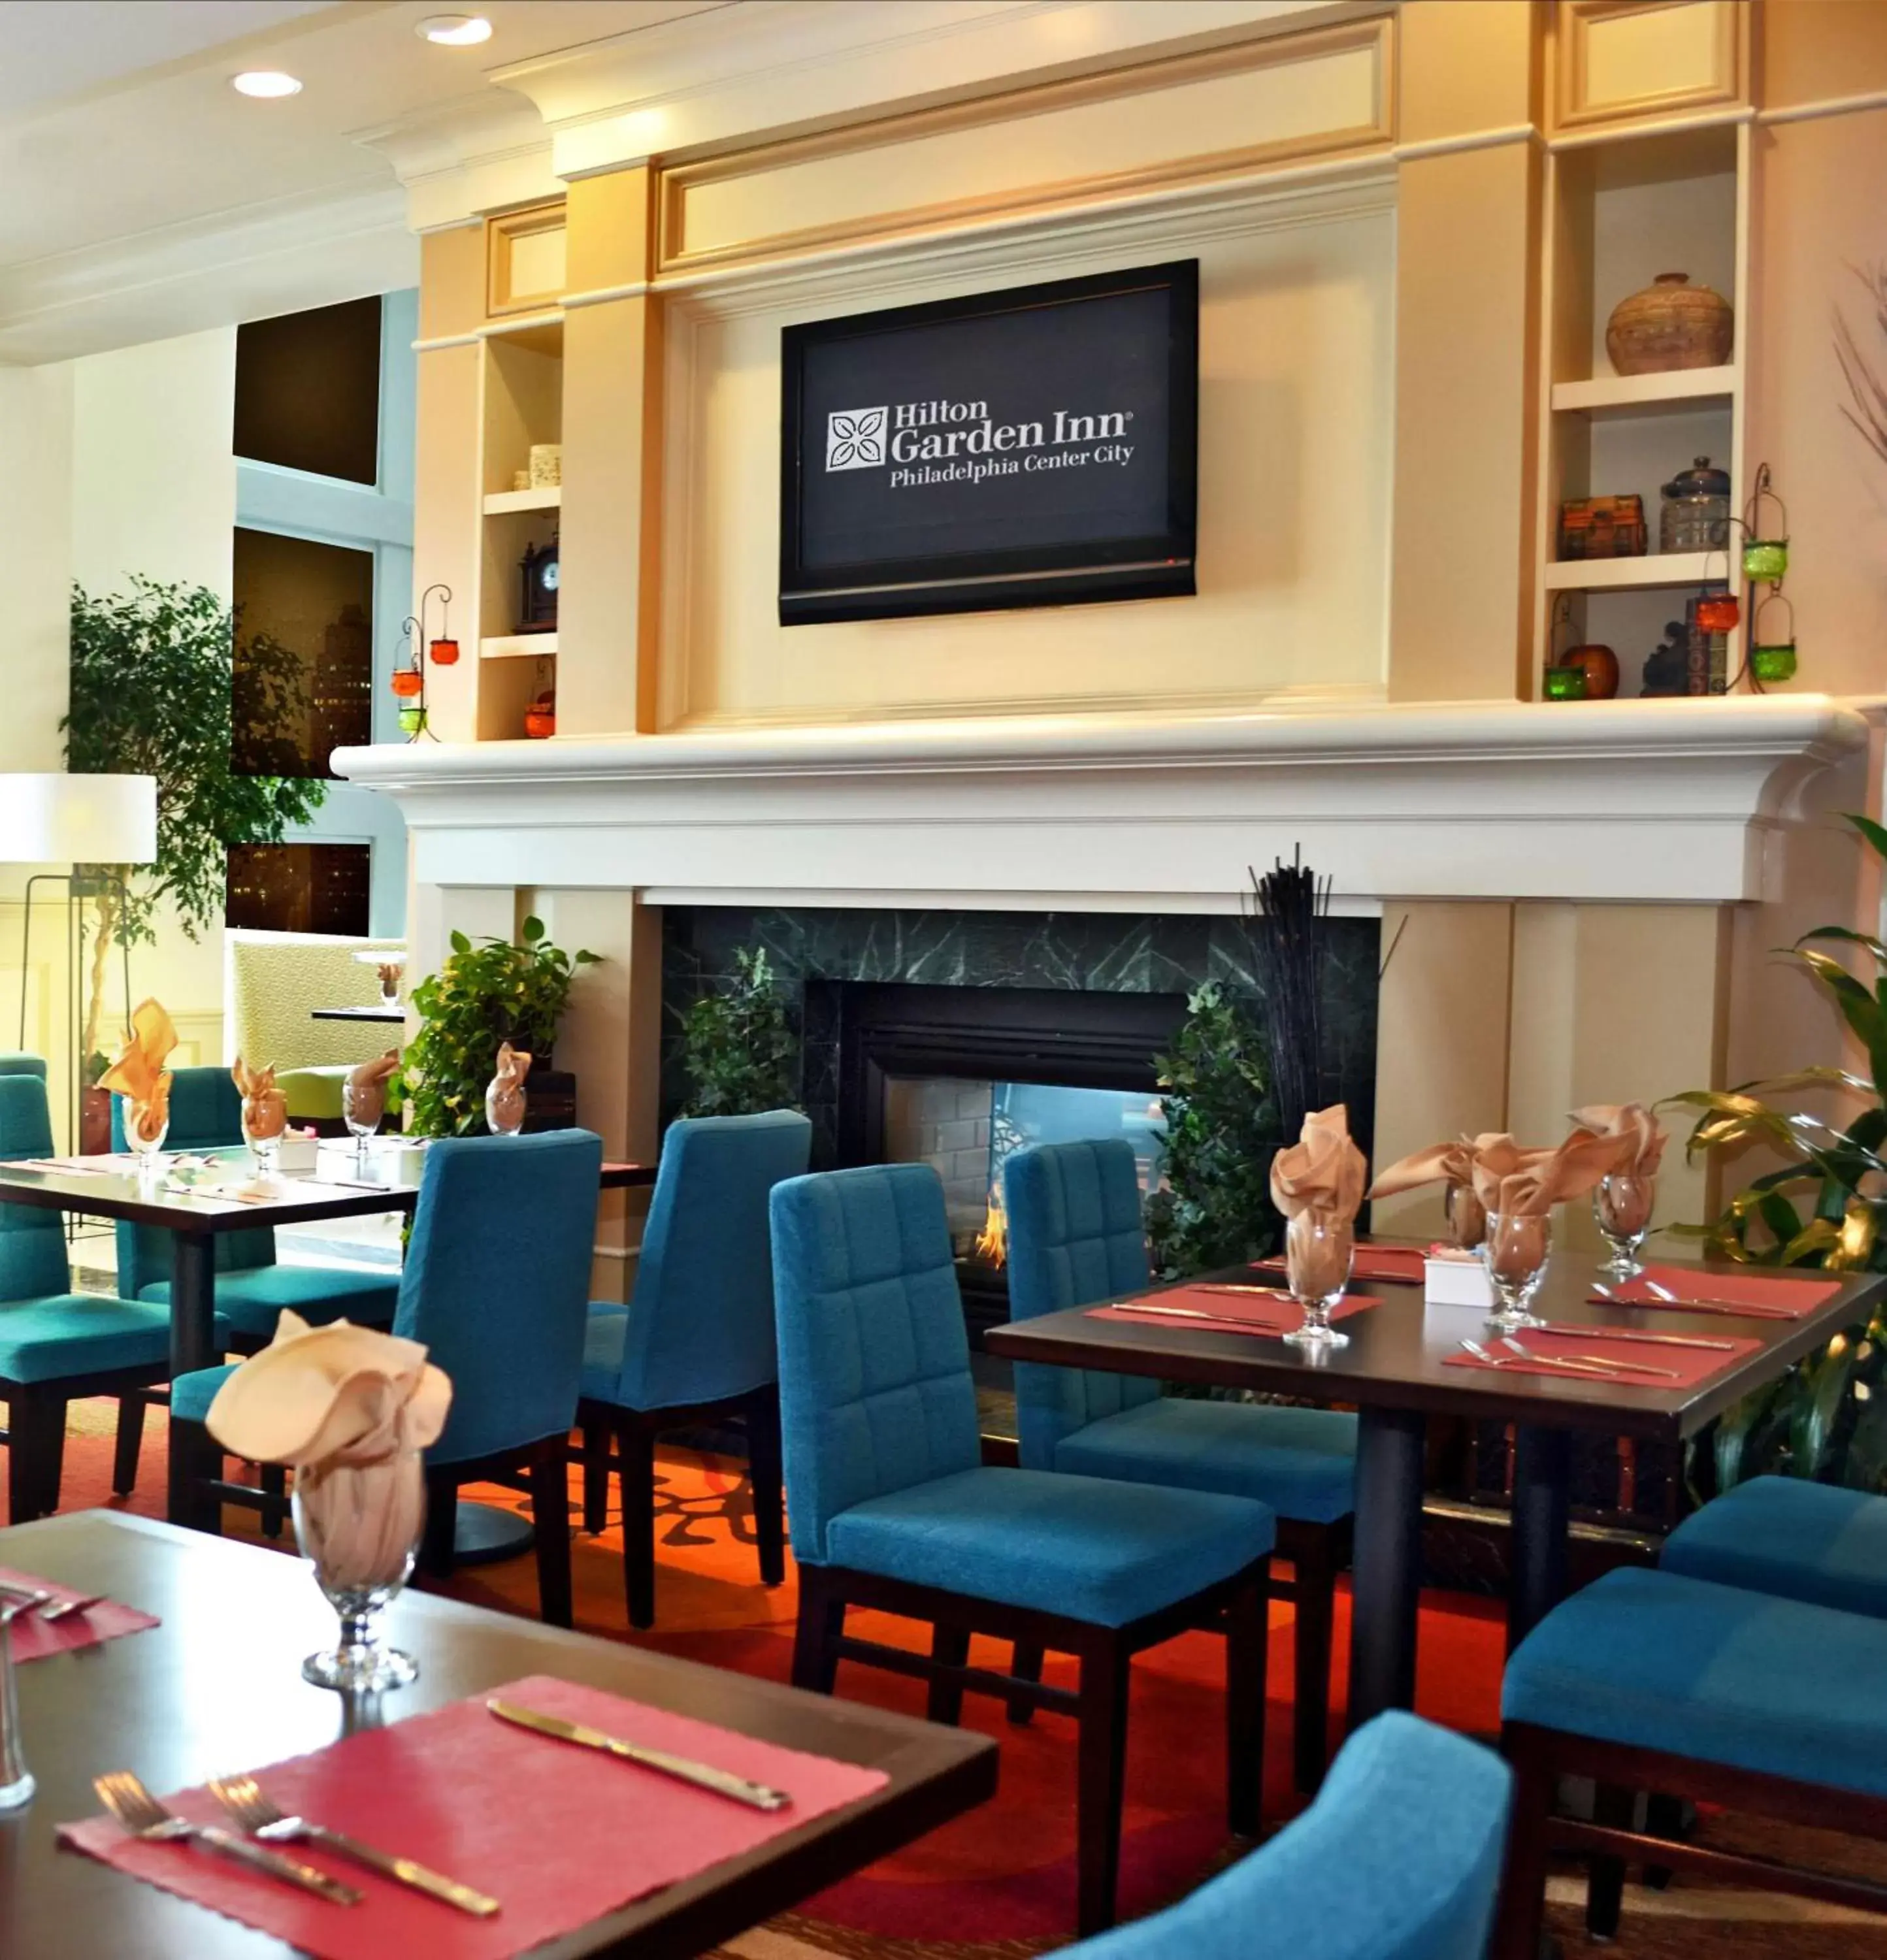 Restaurant/Places to Eat in Hilton Garden Inn Philadelphia Center City